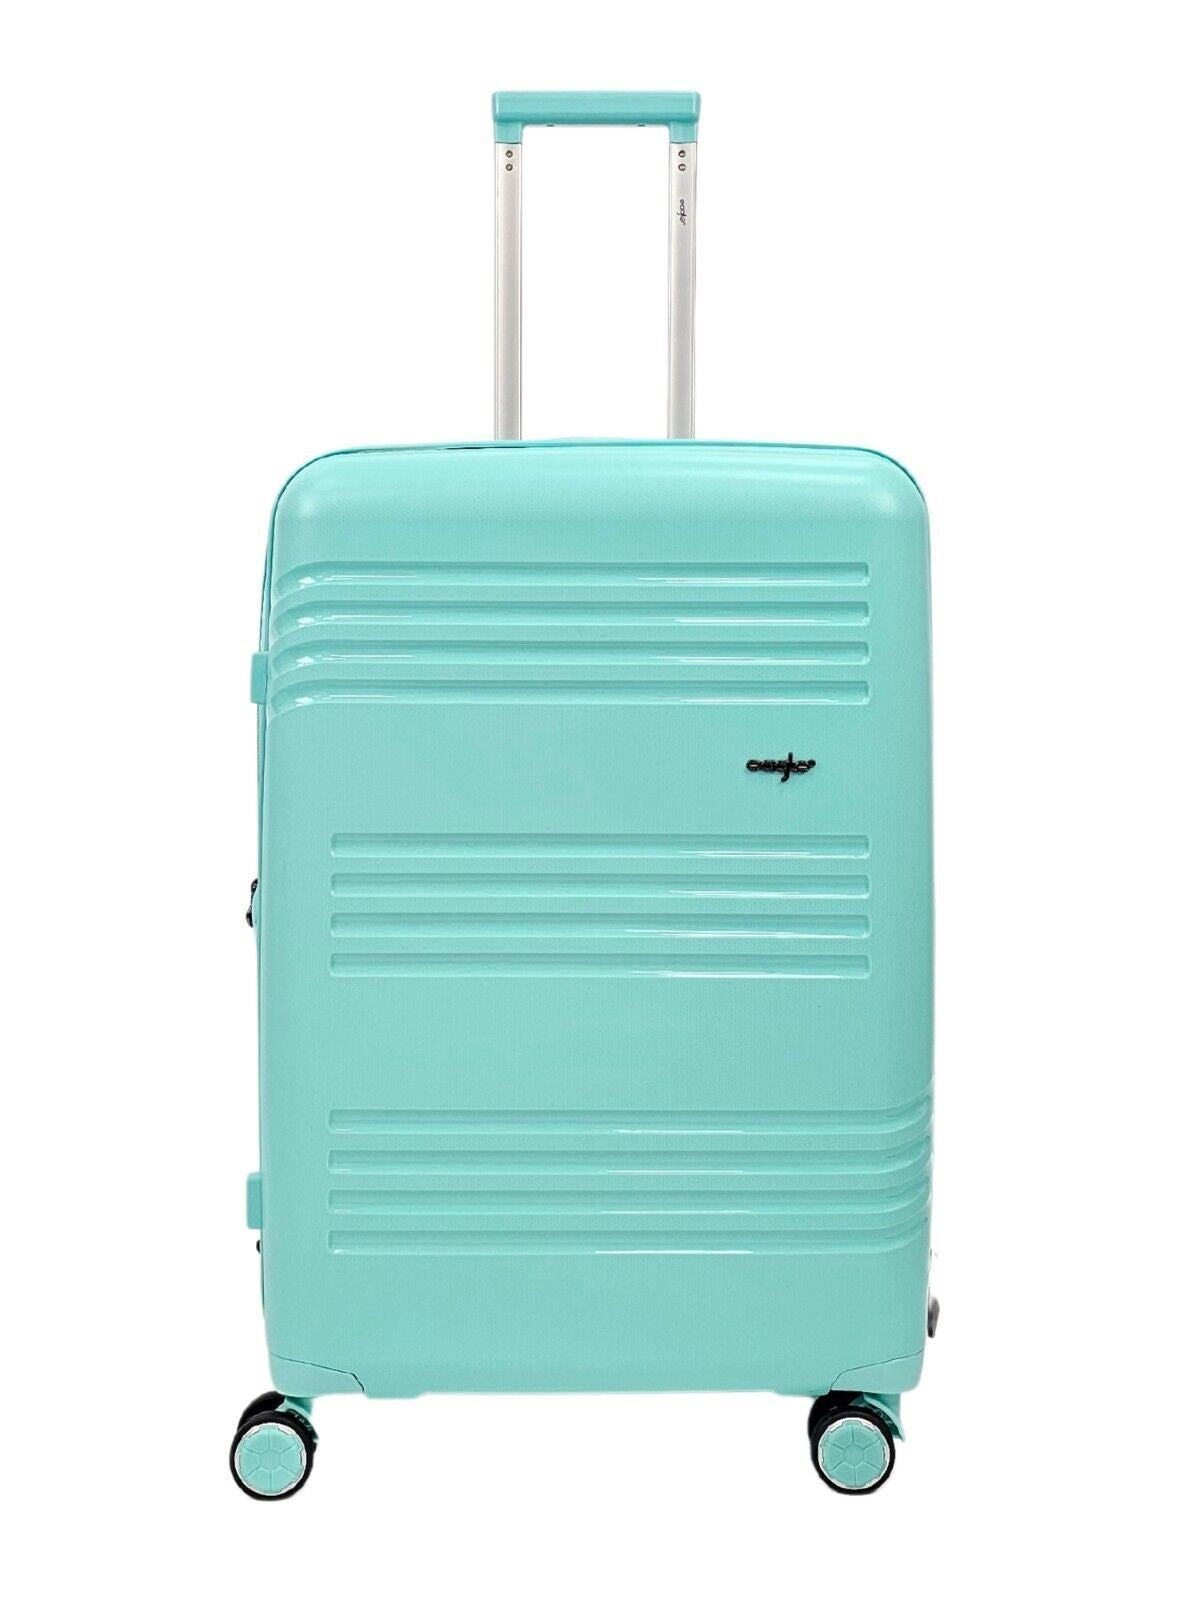 Hard Shell Teal Cabin Suitcase Set 4 Wheel Luggage TSA Bag